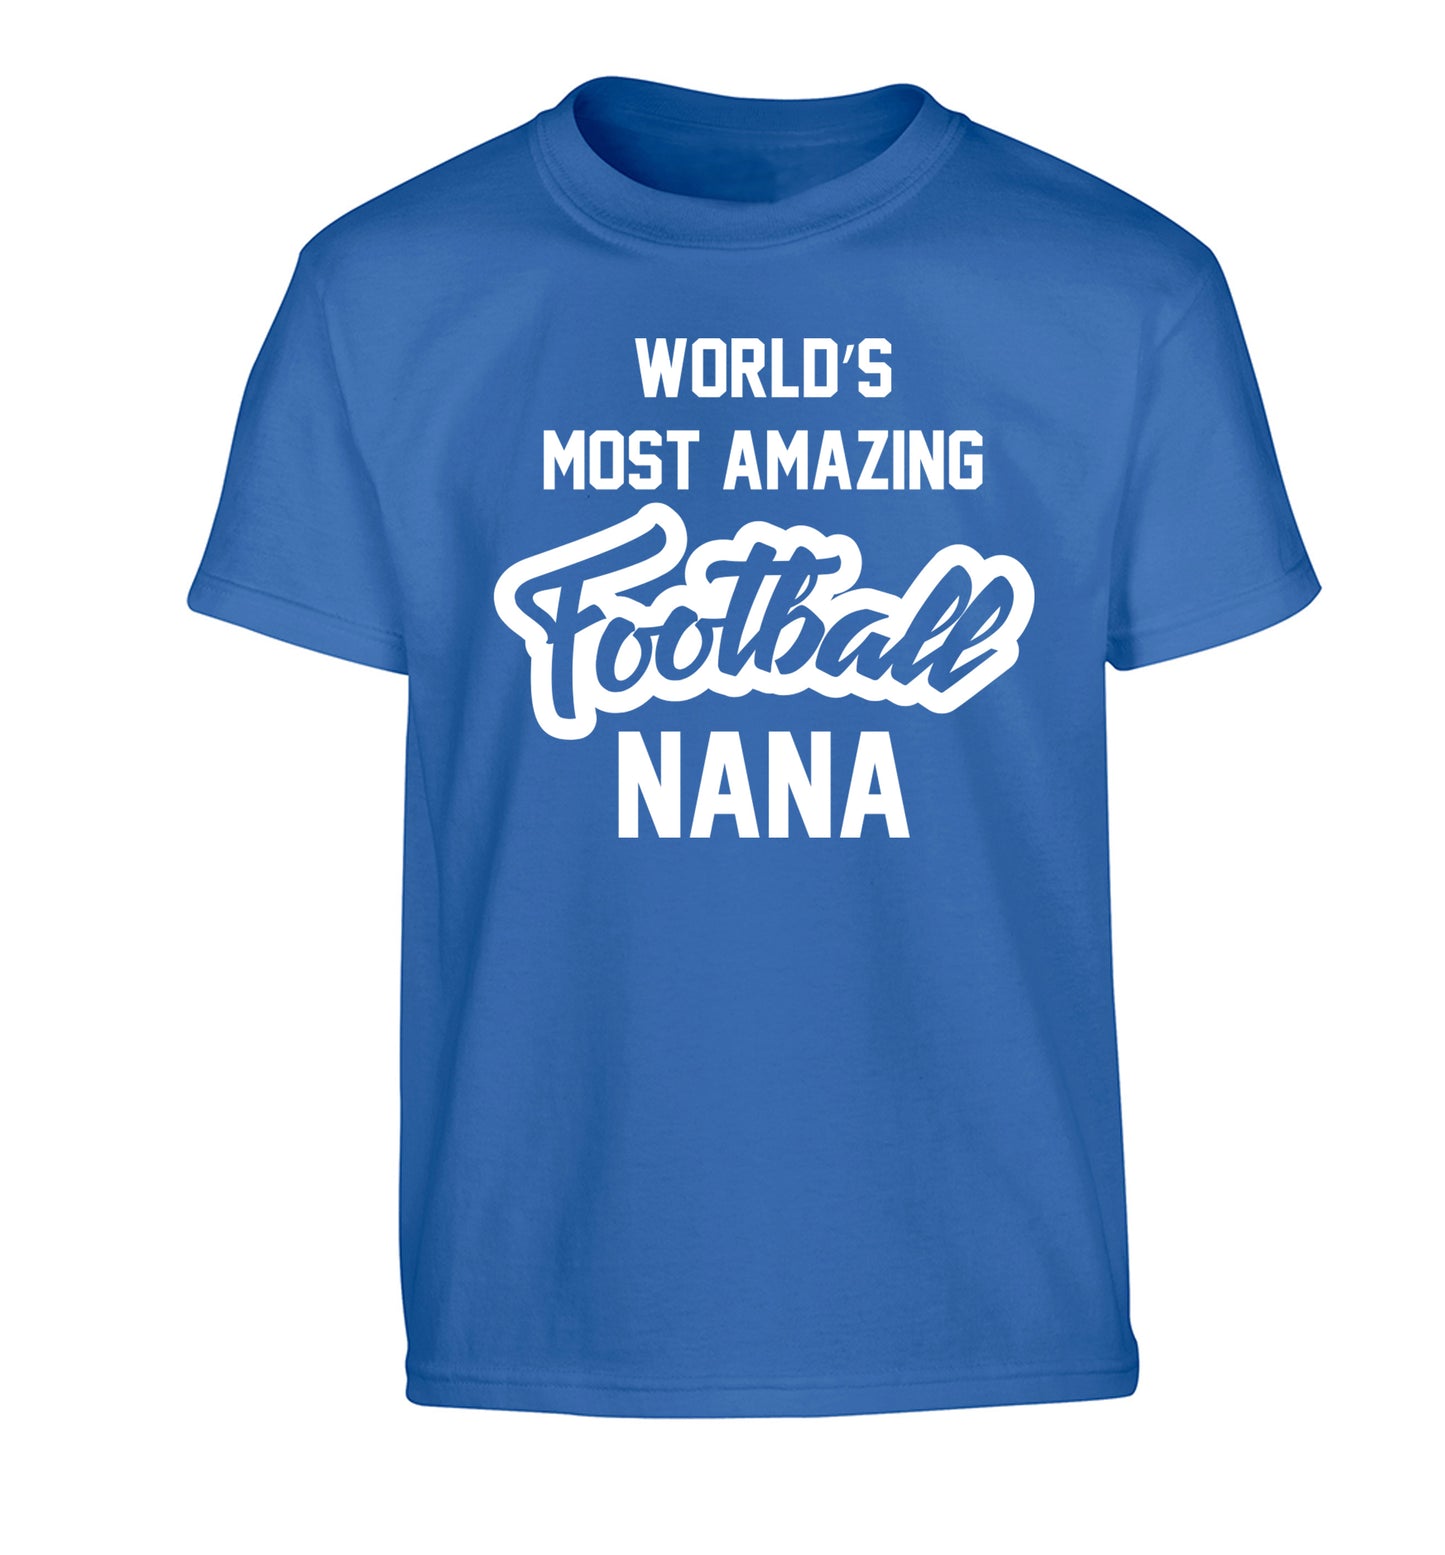 Worlds most amazing football nana Children's blue Tshirt 12-14 Years